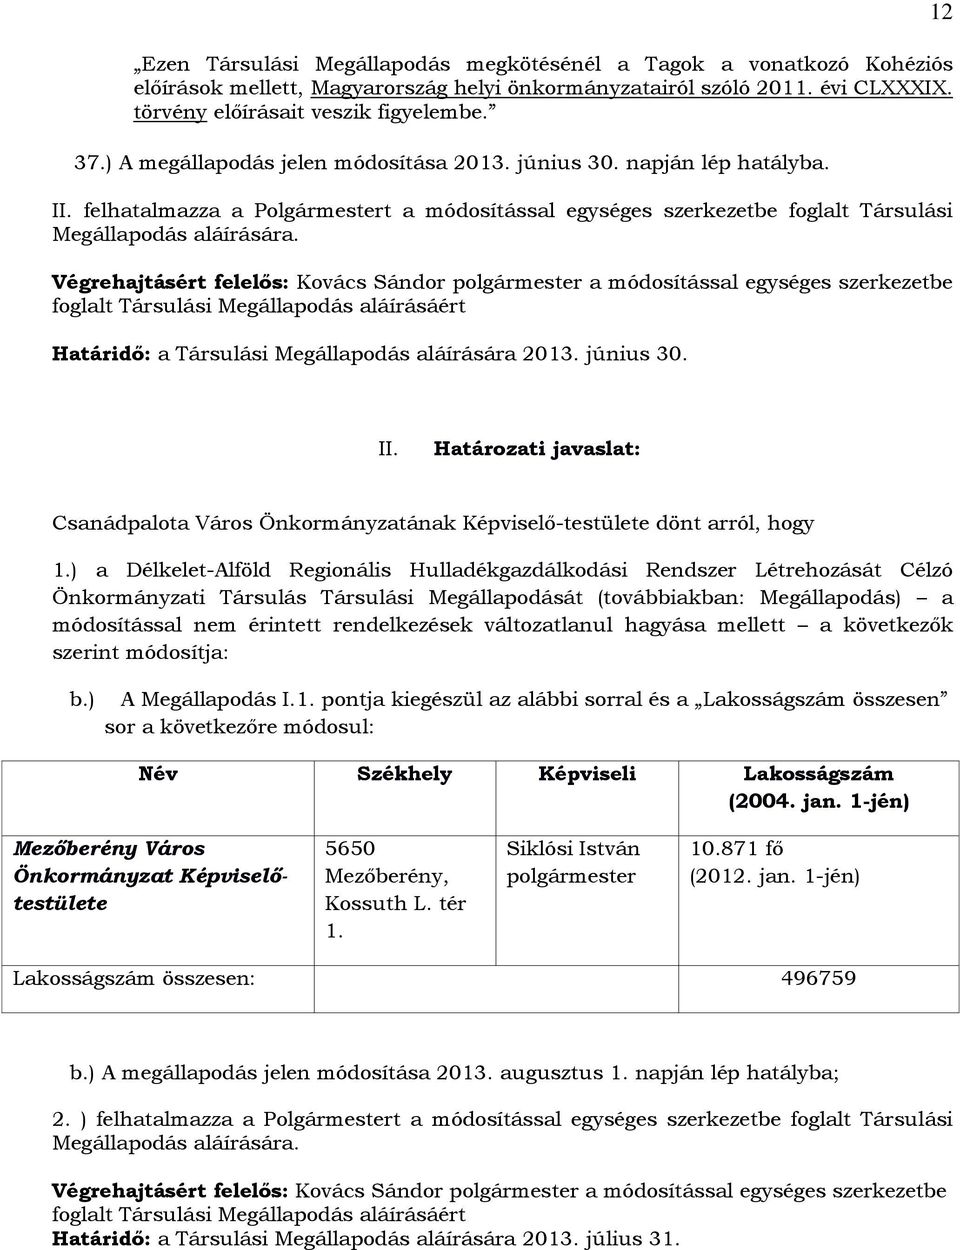 Végrehajtásért felelős: Kovács Sándor a módosítással egységes szerkezetbe foglalt Társulási Megállapodás aláírásáért Határidő: a Társulási Megállapodás aláírására 2013. június 30. 12 II.